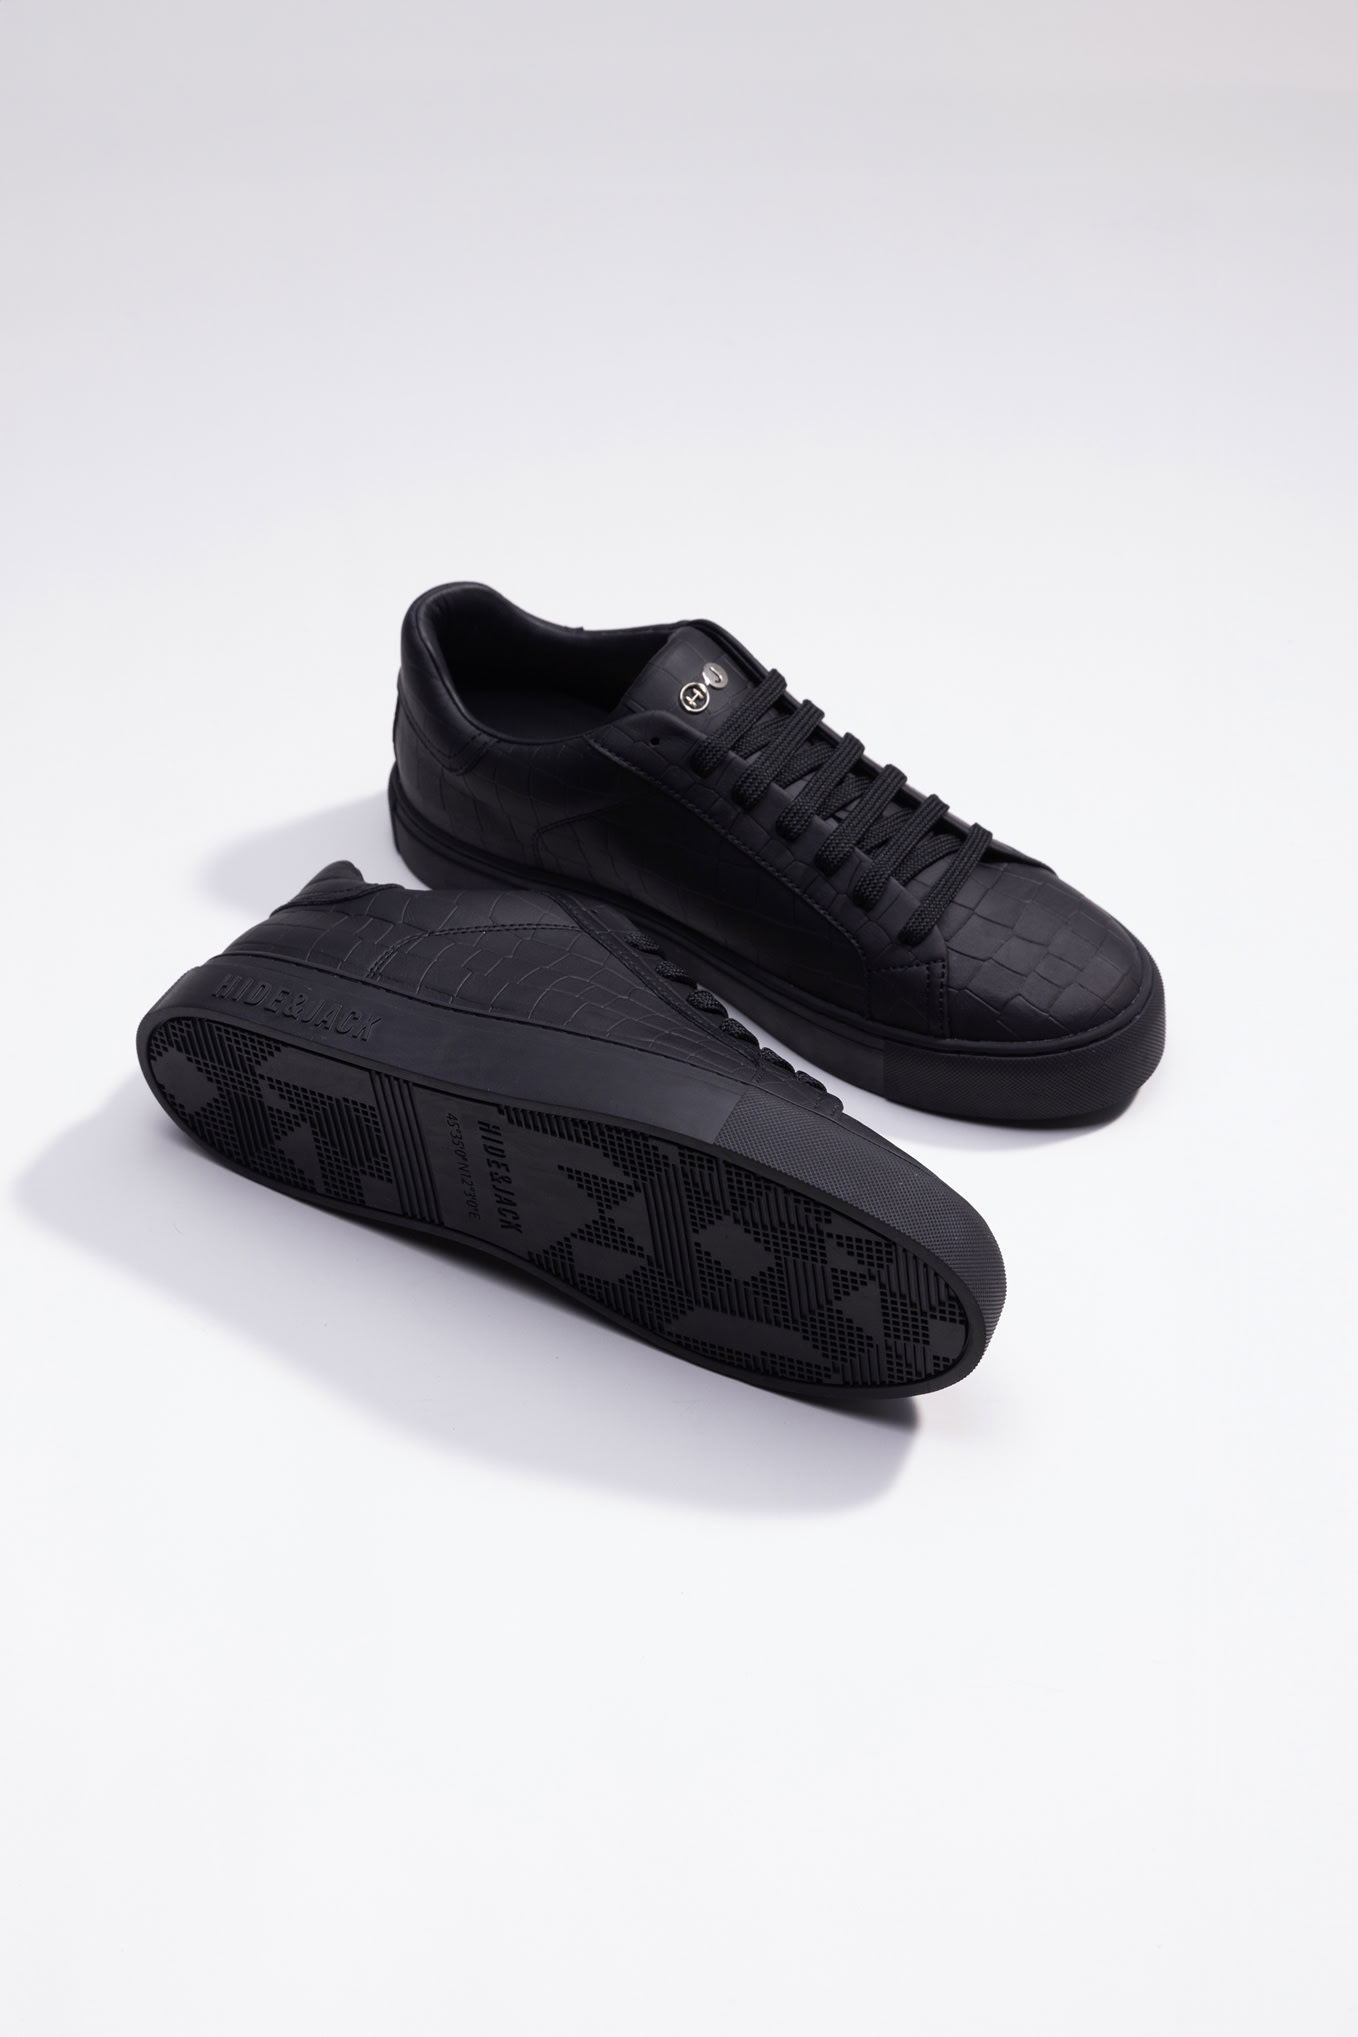 Hide & Jack Low Top Sneaker - Essence Black Black